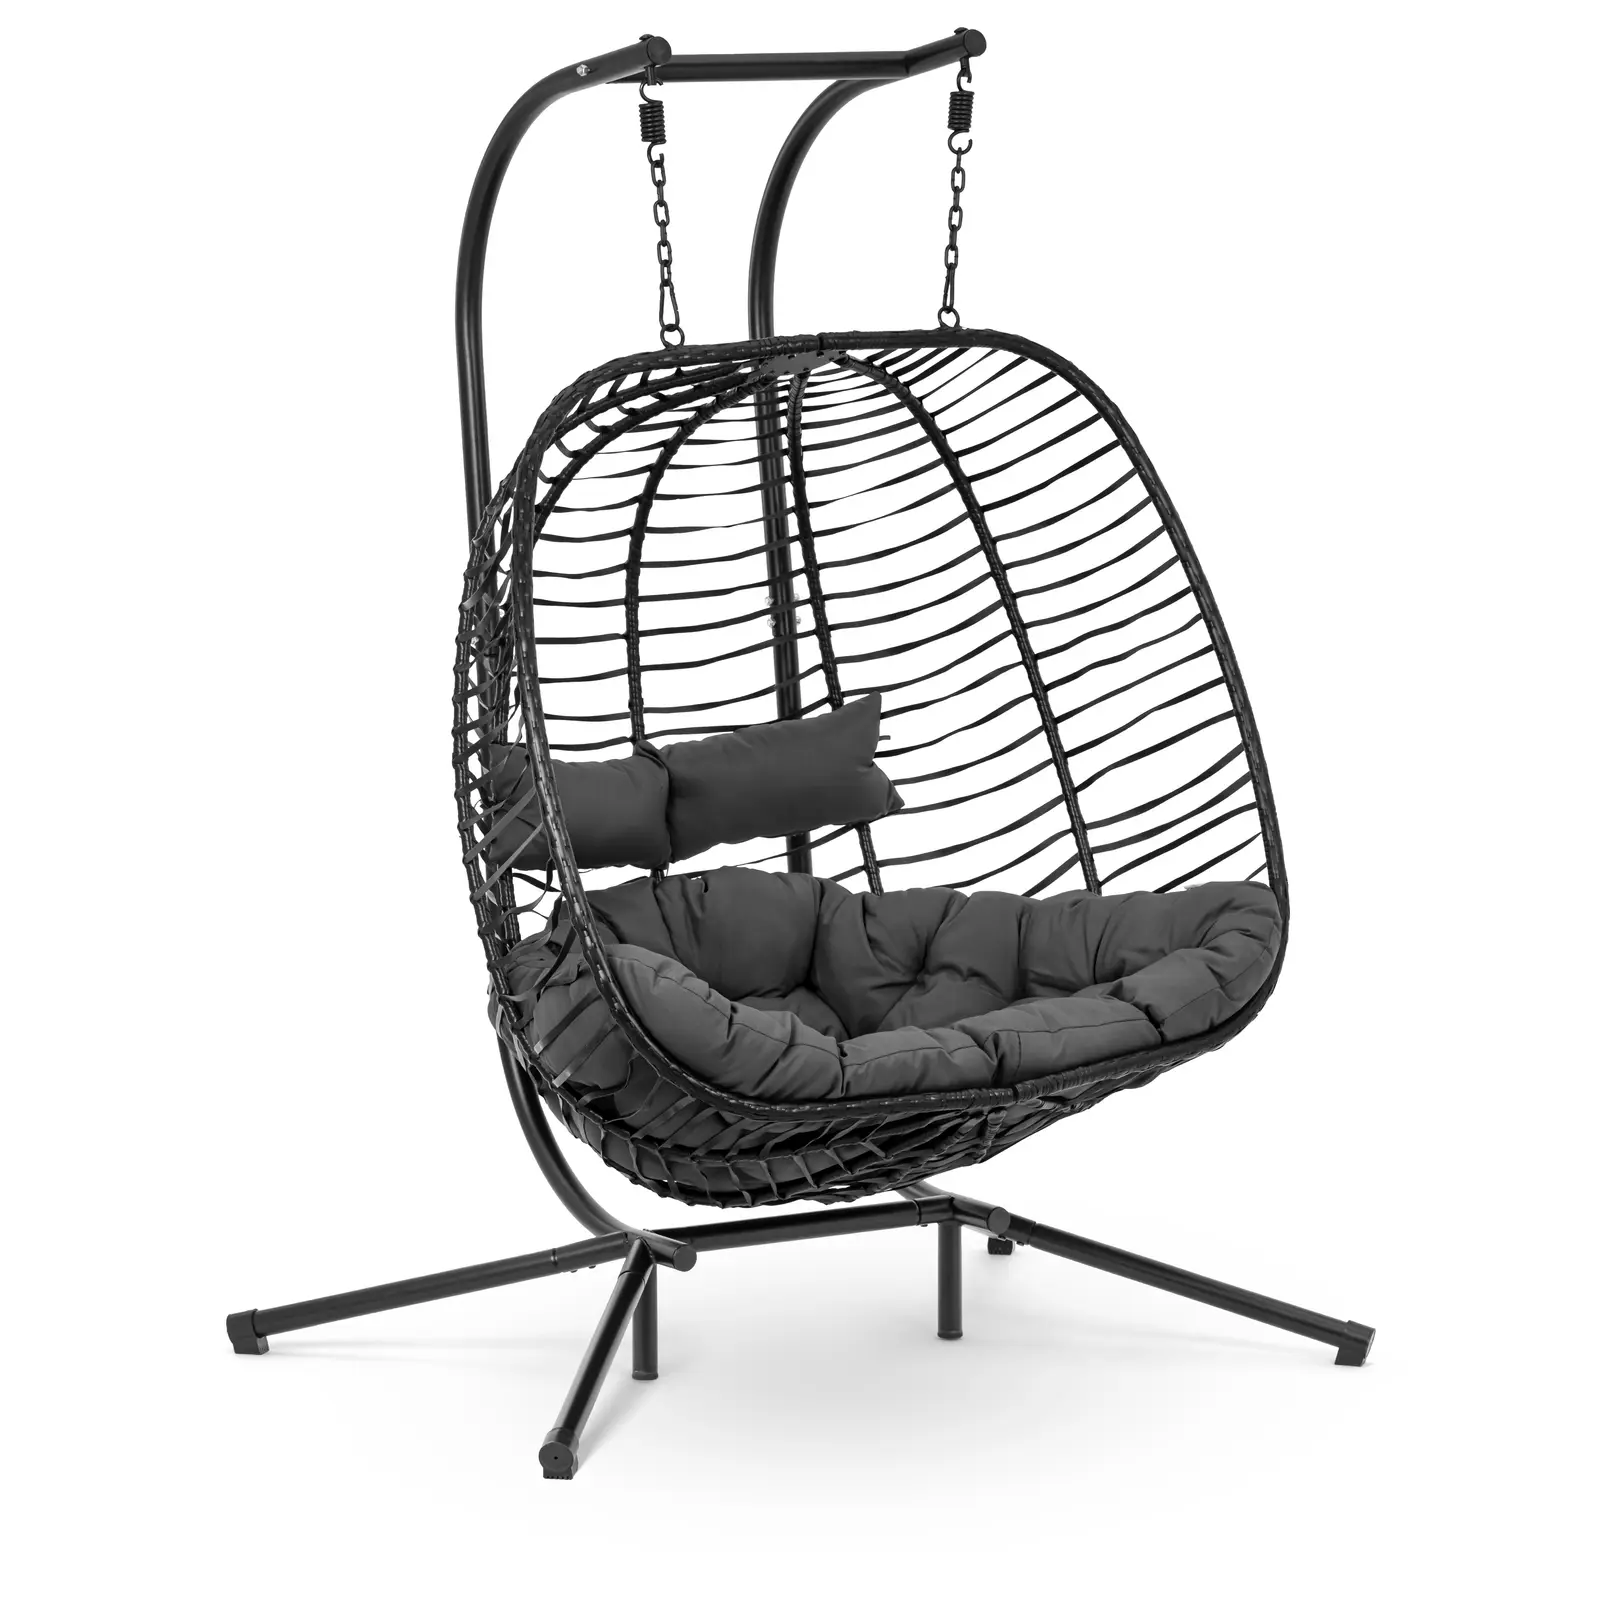 Hængestol 2 personer - med stativ - sammenklappeligt sæde - sort og grå